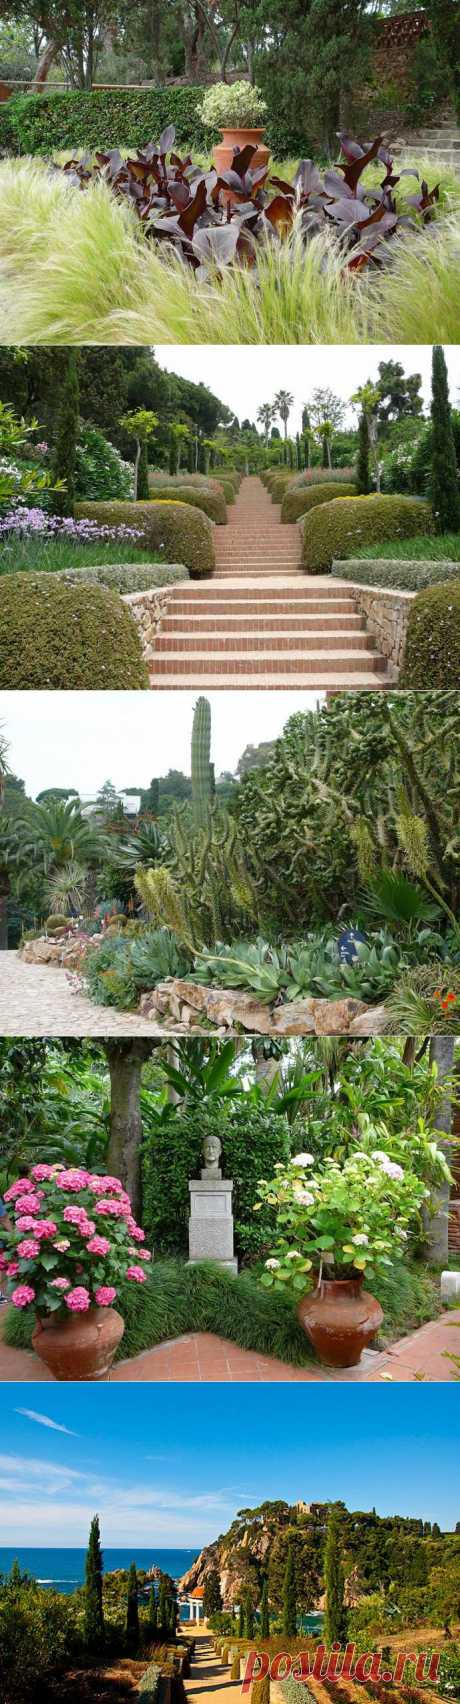 Ботанический сад Маримуртра в Бланесе. Испания